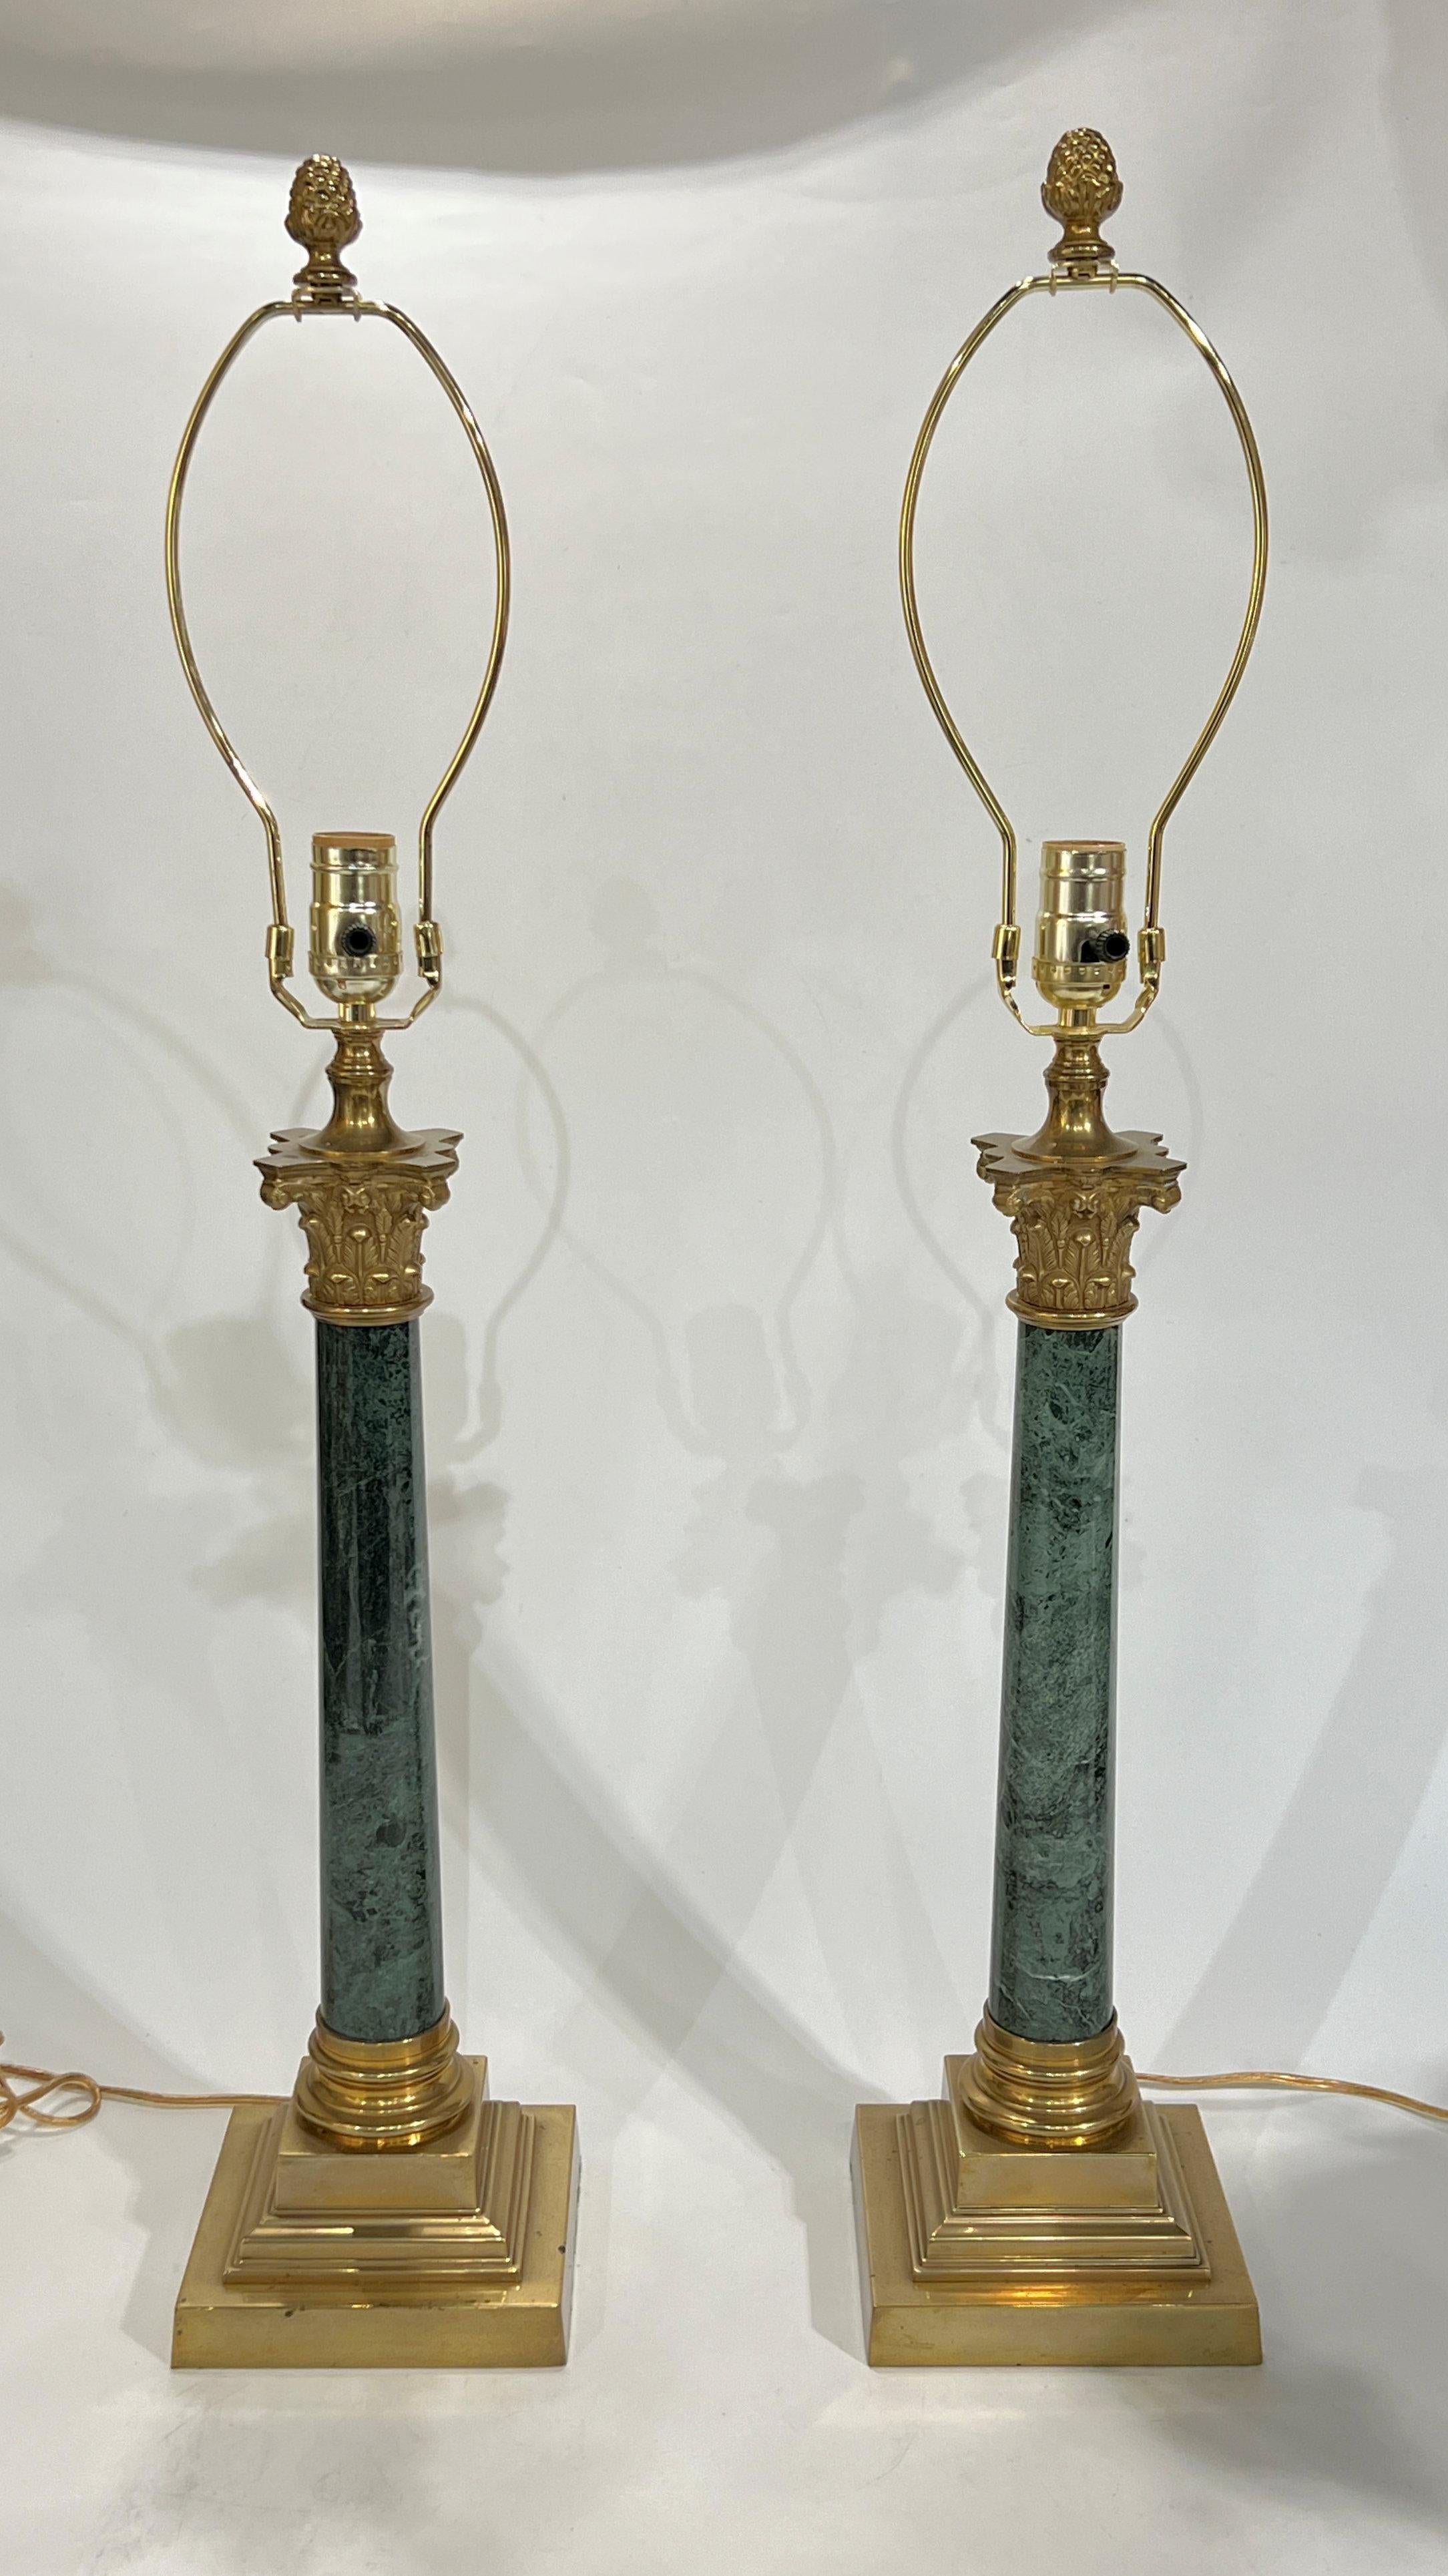 Ein Paar Vintage-Tischlampen im Empire-Stil in Form einer römischen Säule, fein gearbeitet aus grünem Marmor mit Messingbeschlägen, einschließlich korinthischer Kapitelle und quadratischer Sockel.  Mit Kabel und Stecker, gebrauchsfertig.